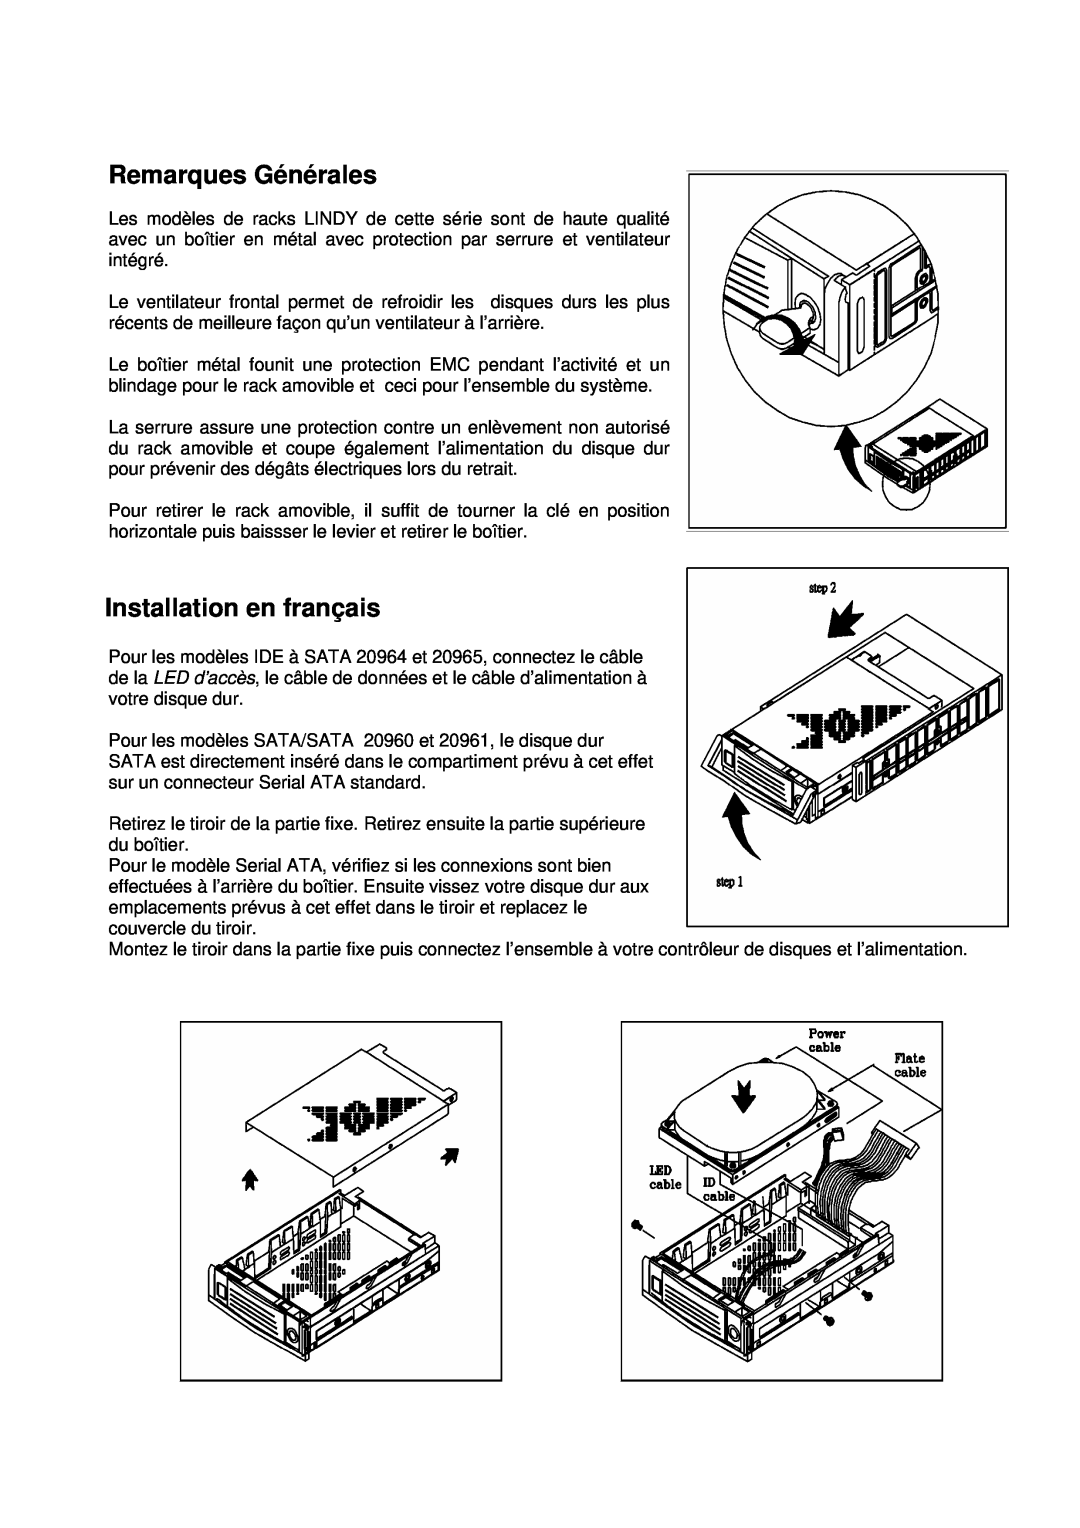 Lindy 20960, 20965 manual Remarques Générales, Installation en français 